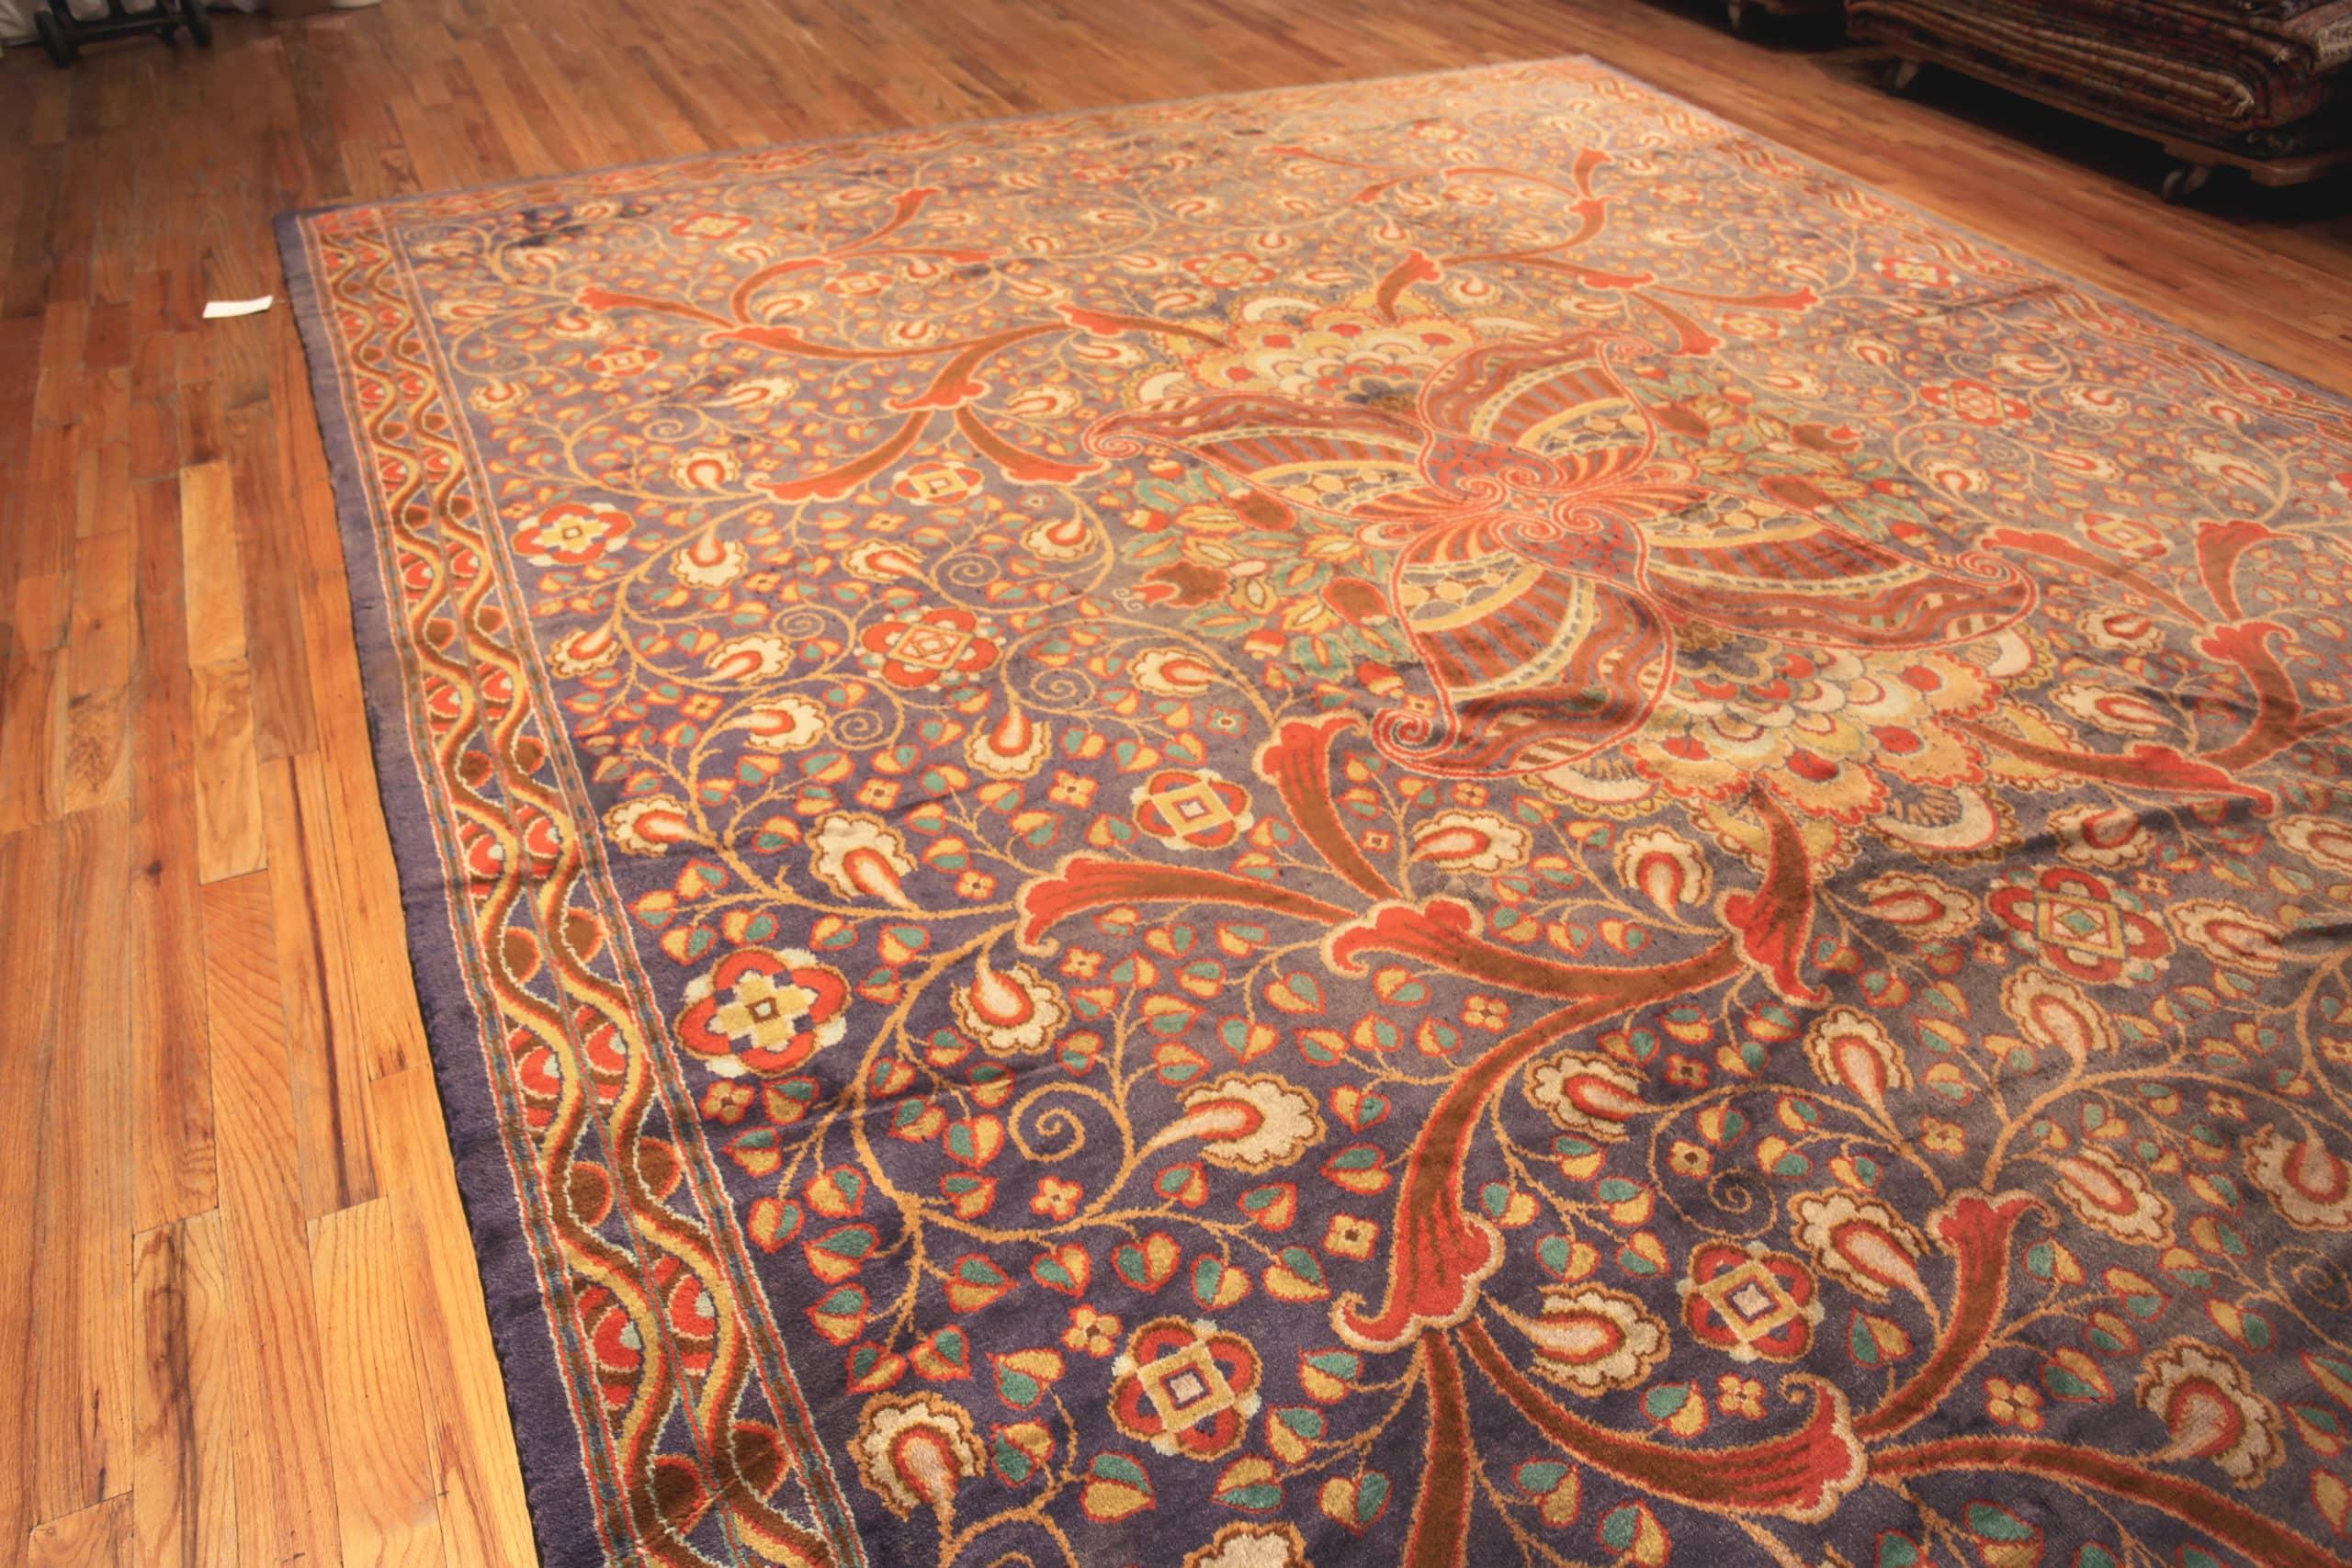 Magnifique grand tapis irlandais ancien de style Arts and Crafts Donegal, Pays d'origine : Irlande, Circa Date : 1920 - Donegal Carpets a été fondé en 1898 par Alexander Morton. Il était fabricant de textiles à Killybegs, près de l'Ulster, en